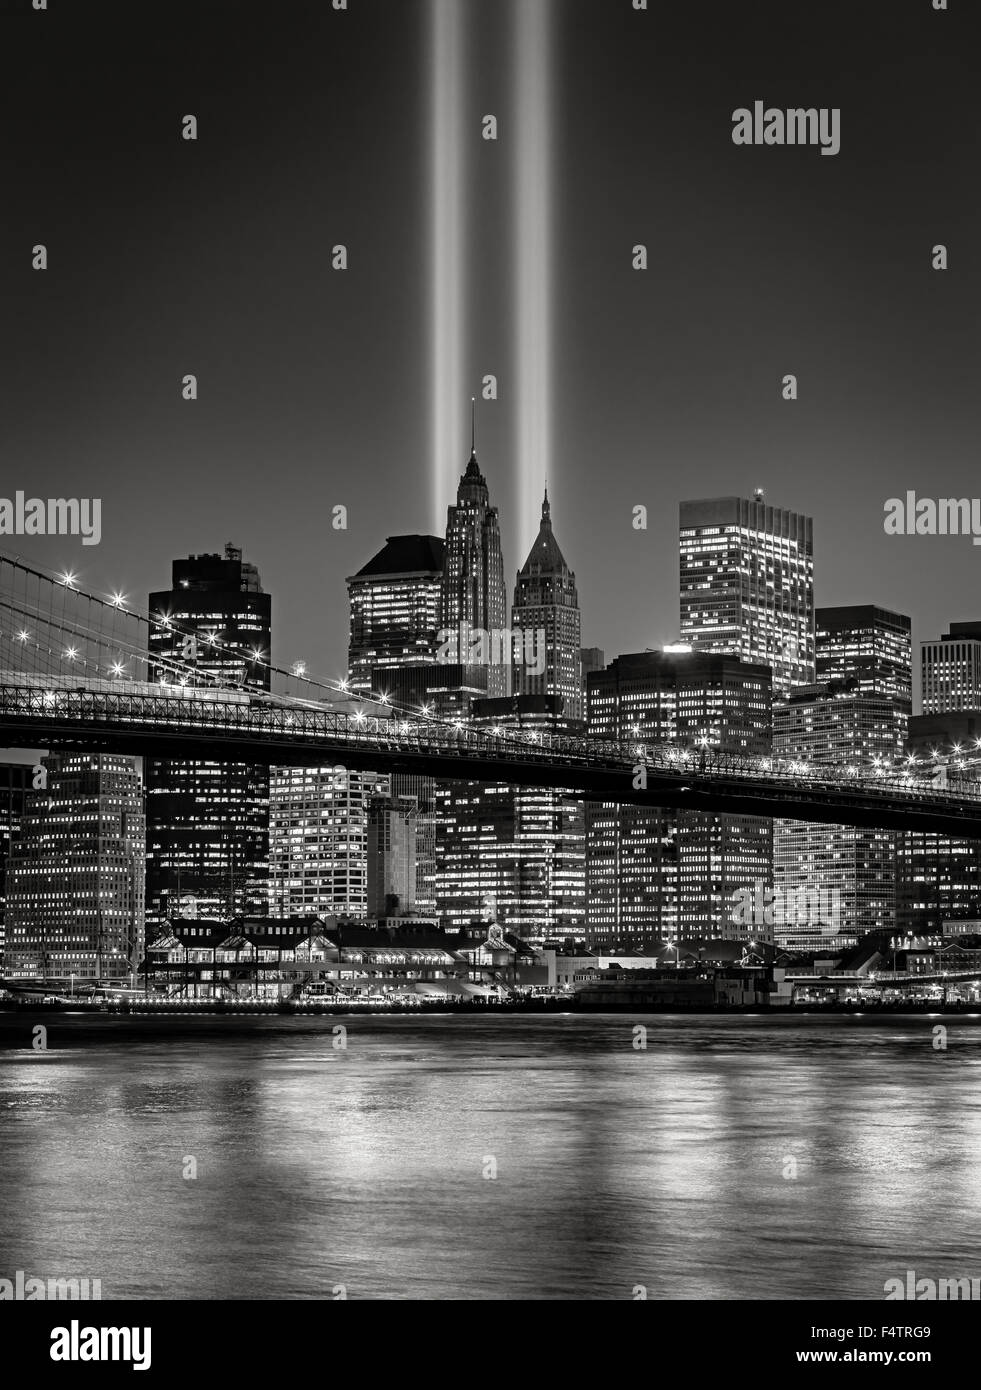 L'hommage rendu à la lumière, dans le Lower Manhattan illuminé avec des gratte-ciel du quartier financier, la ville de New York, Banque D'Images